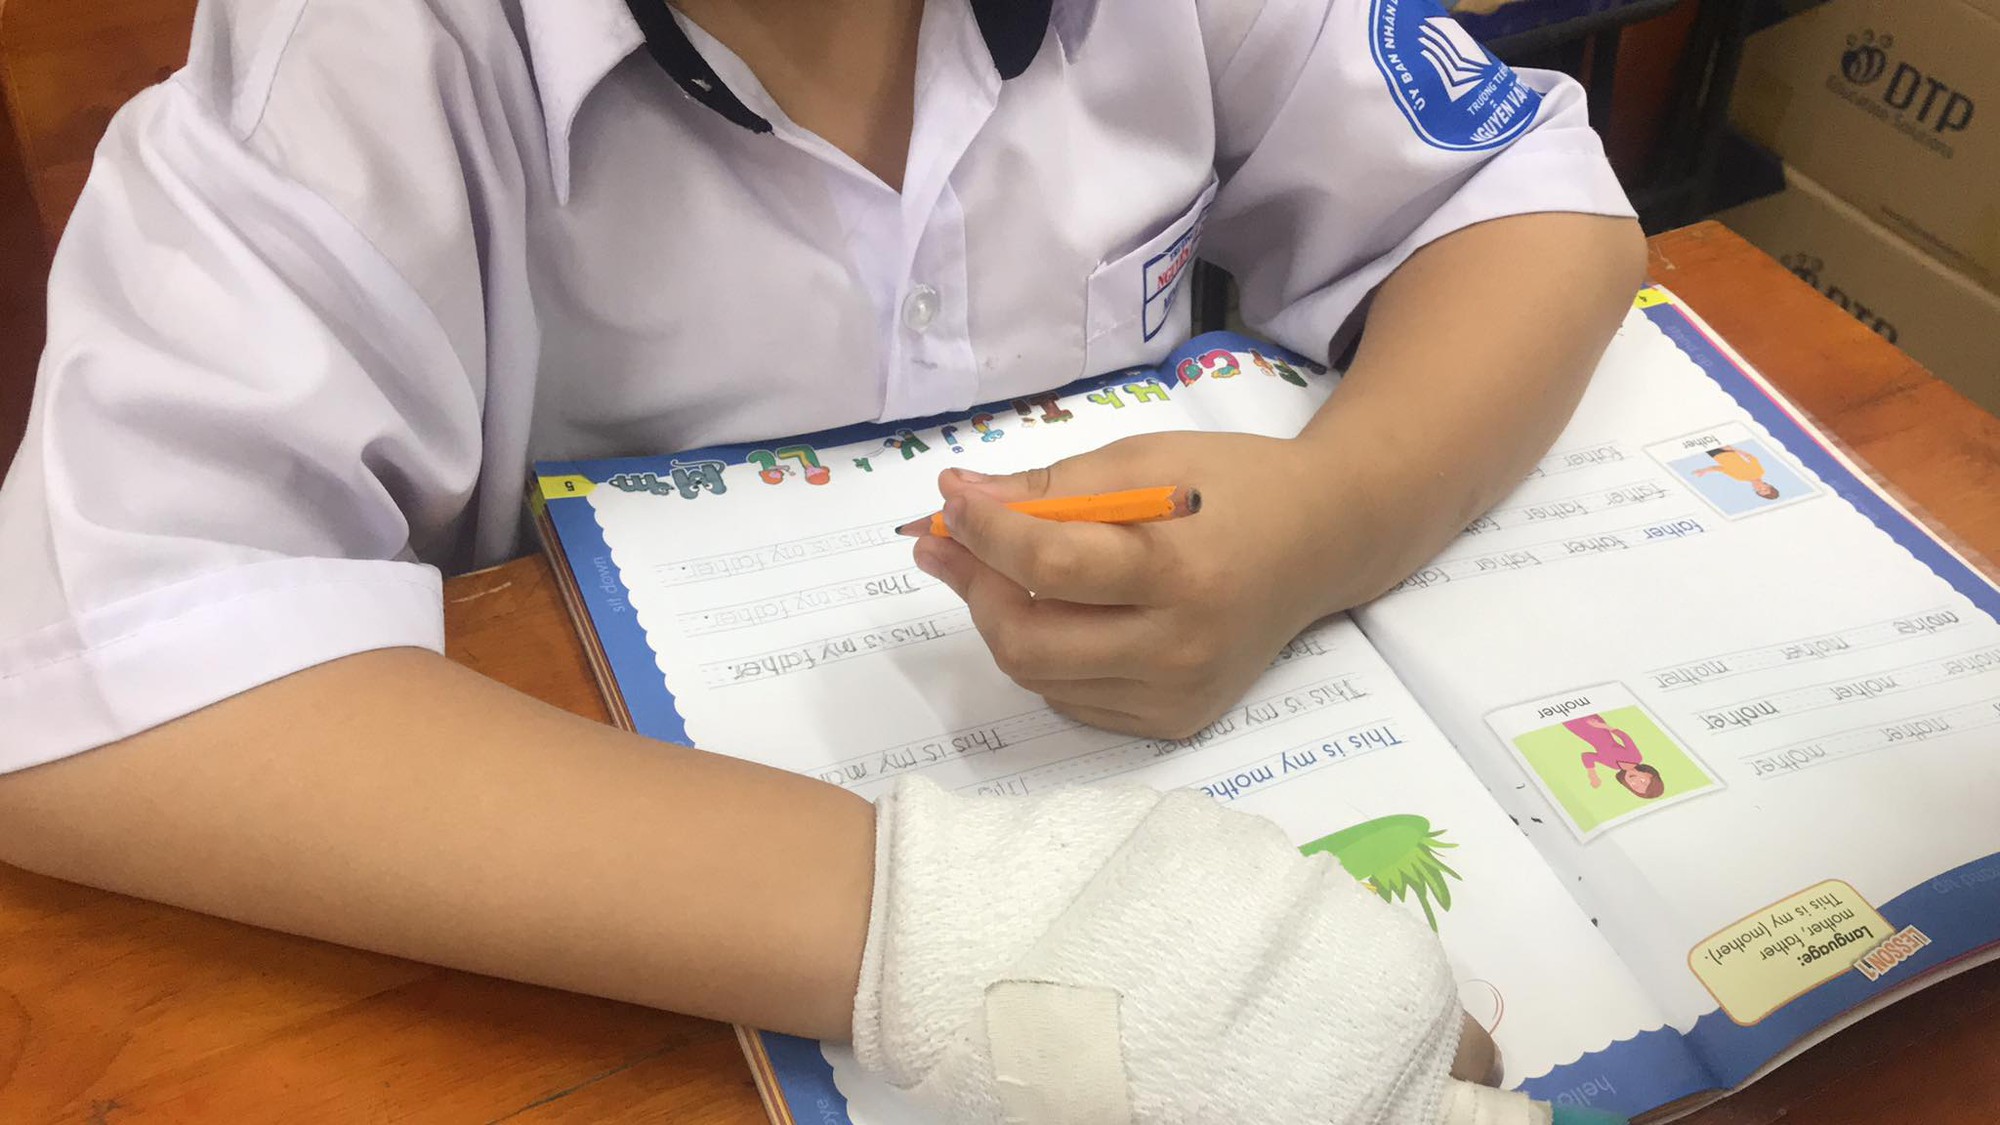 Vụ học sinh bị đánh gãy ngón tay: Phụ huynh phản ánh có dấu hiệu không minh bạch khi xử lý viên chức - Ảnh 1.